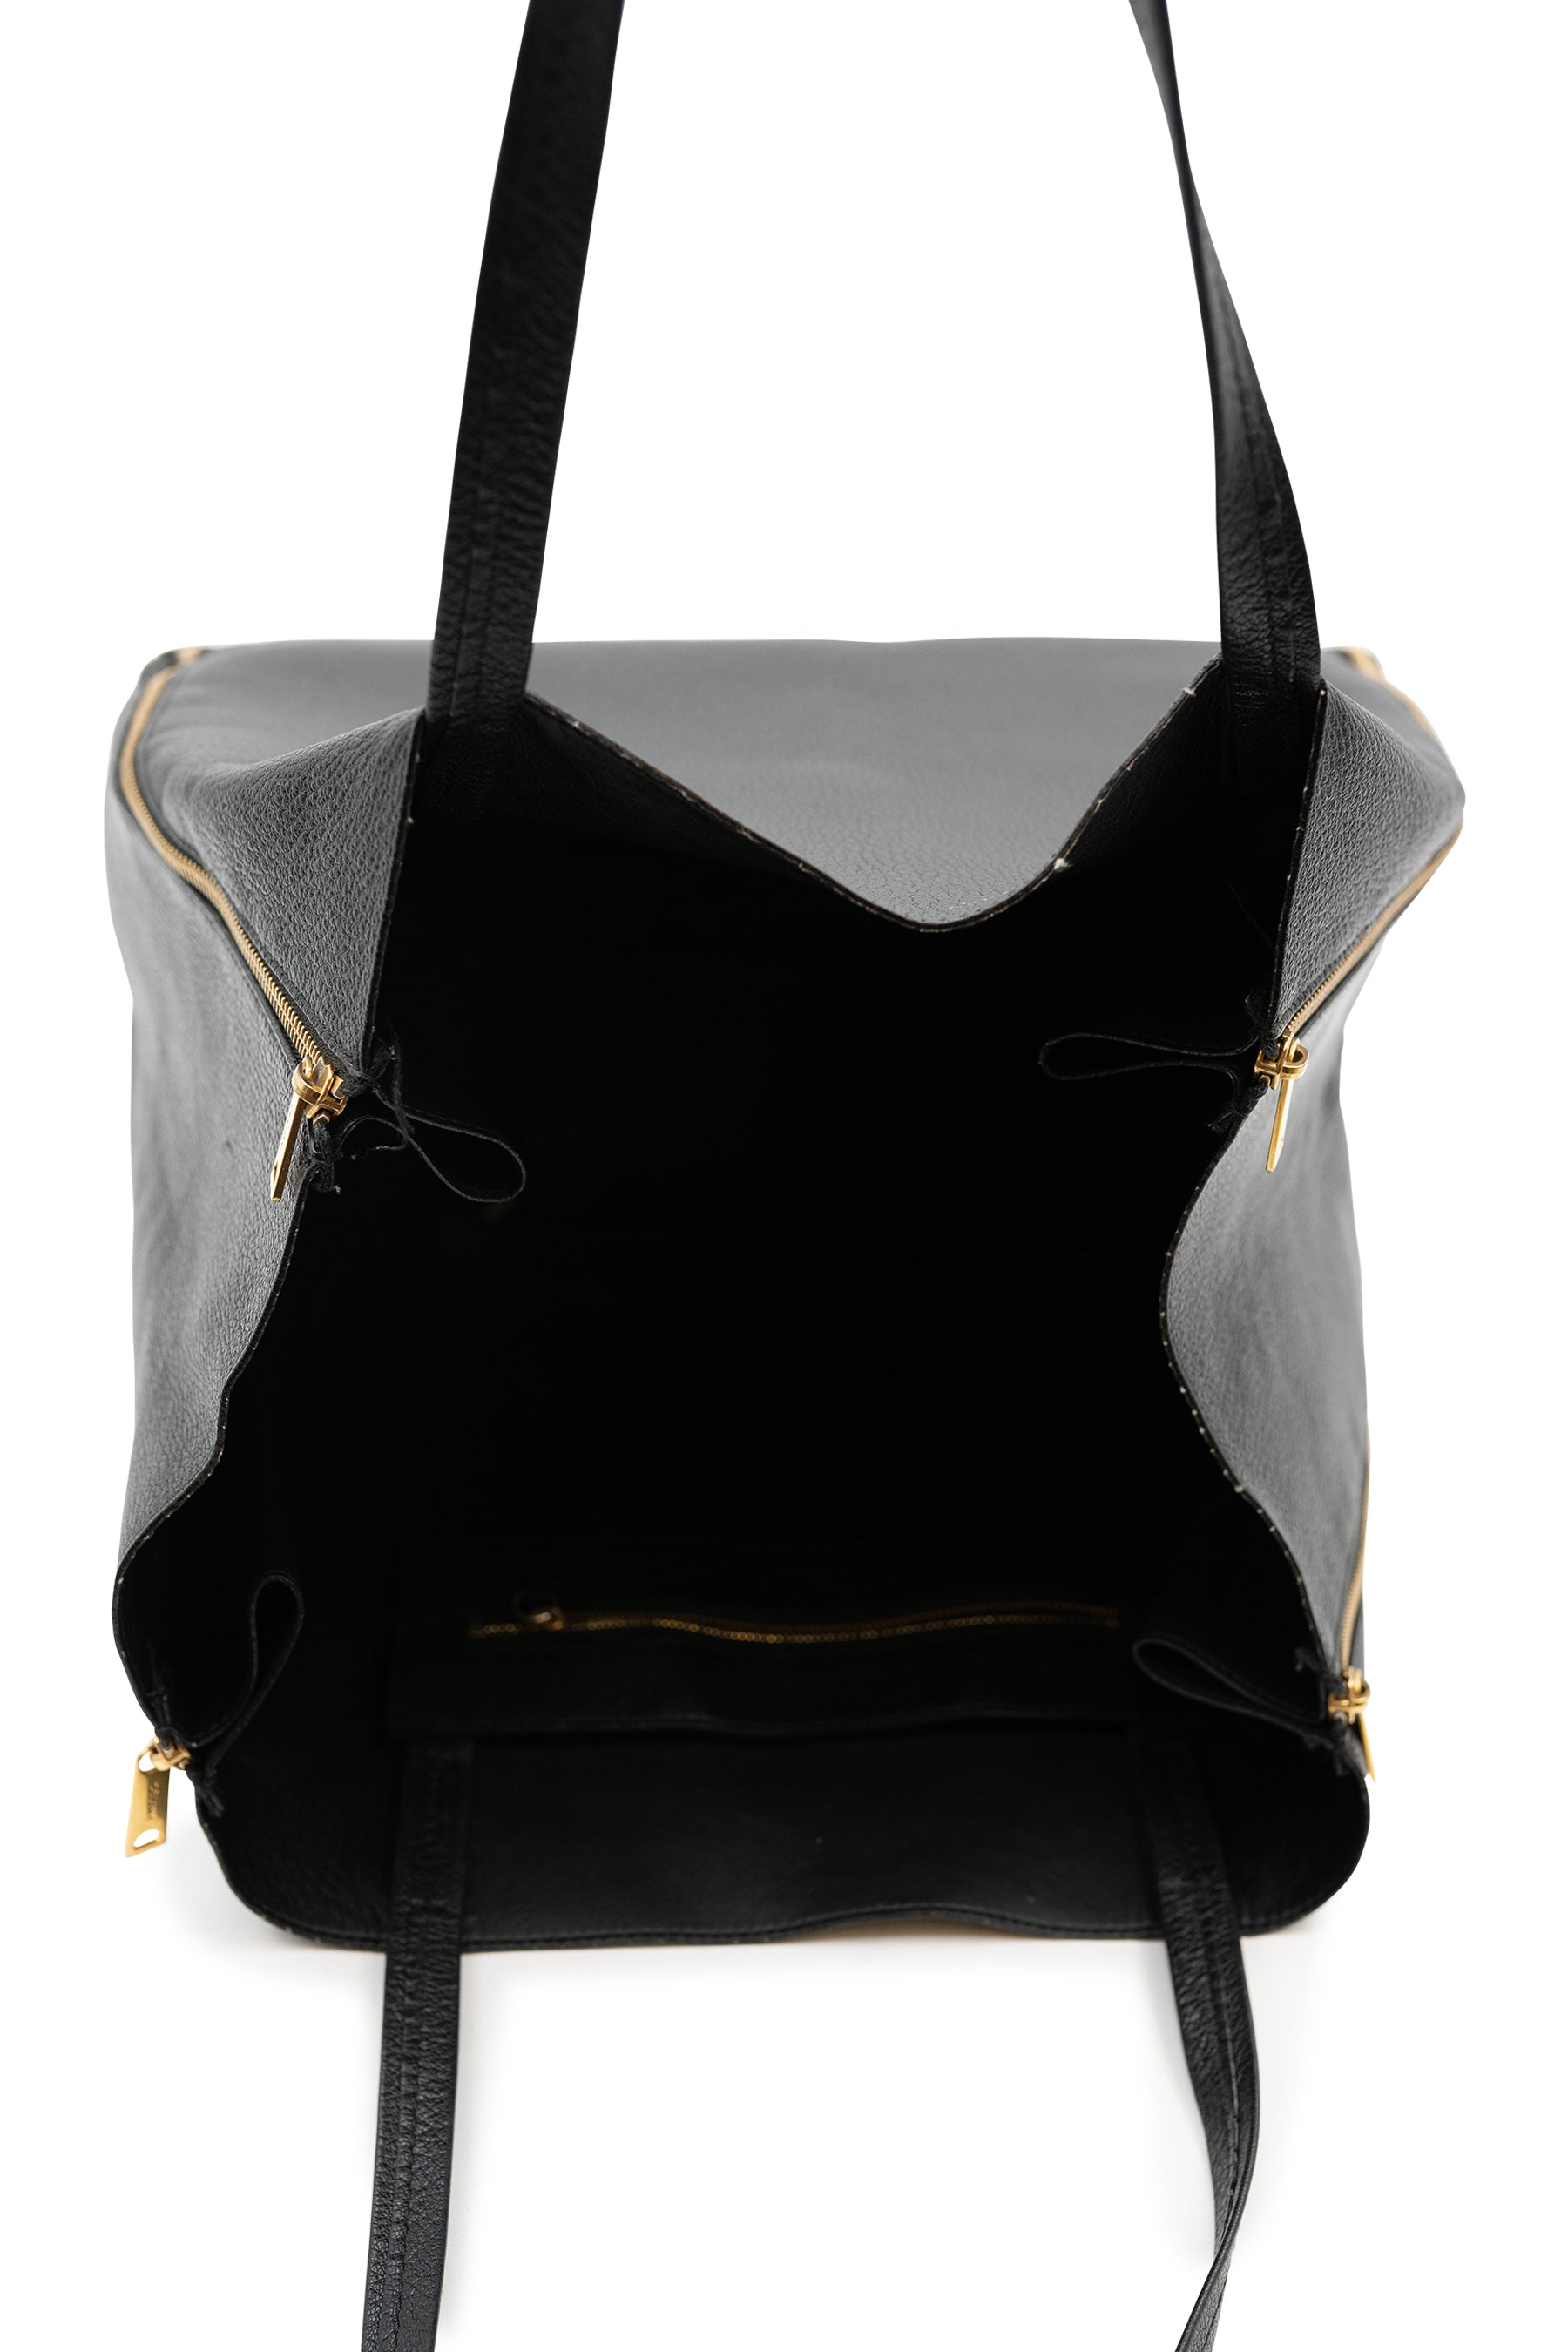 Celine Horizontal Cabas Women's Leather Tote Bag Black,Bordeaux